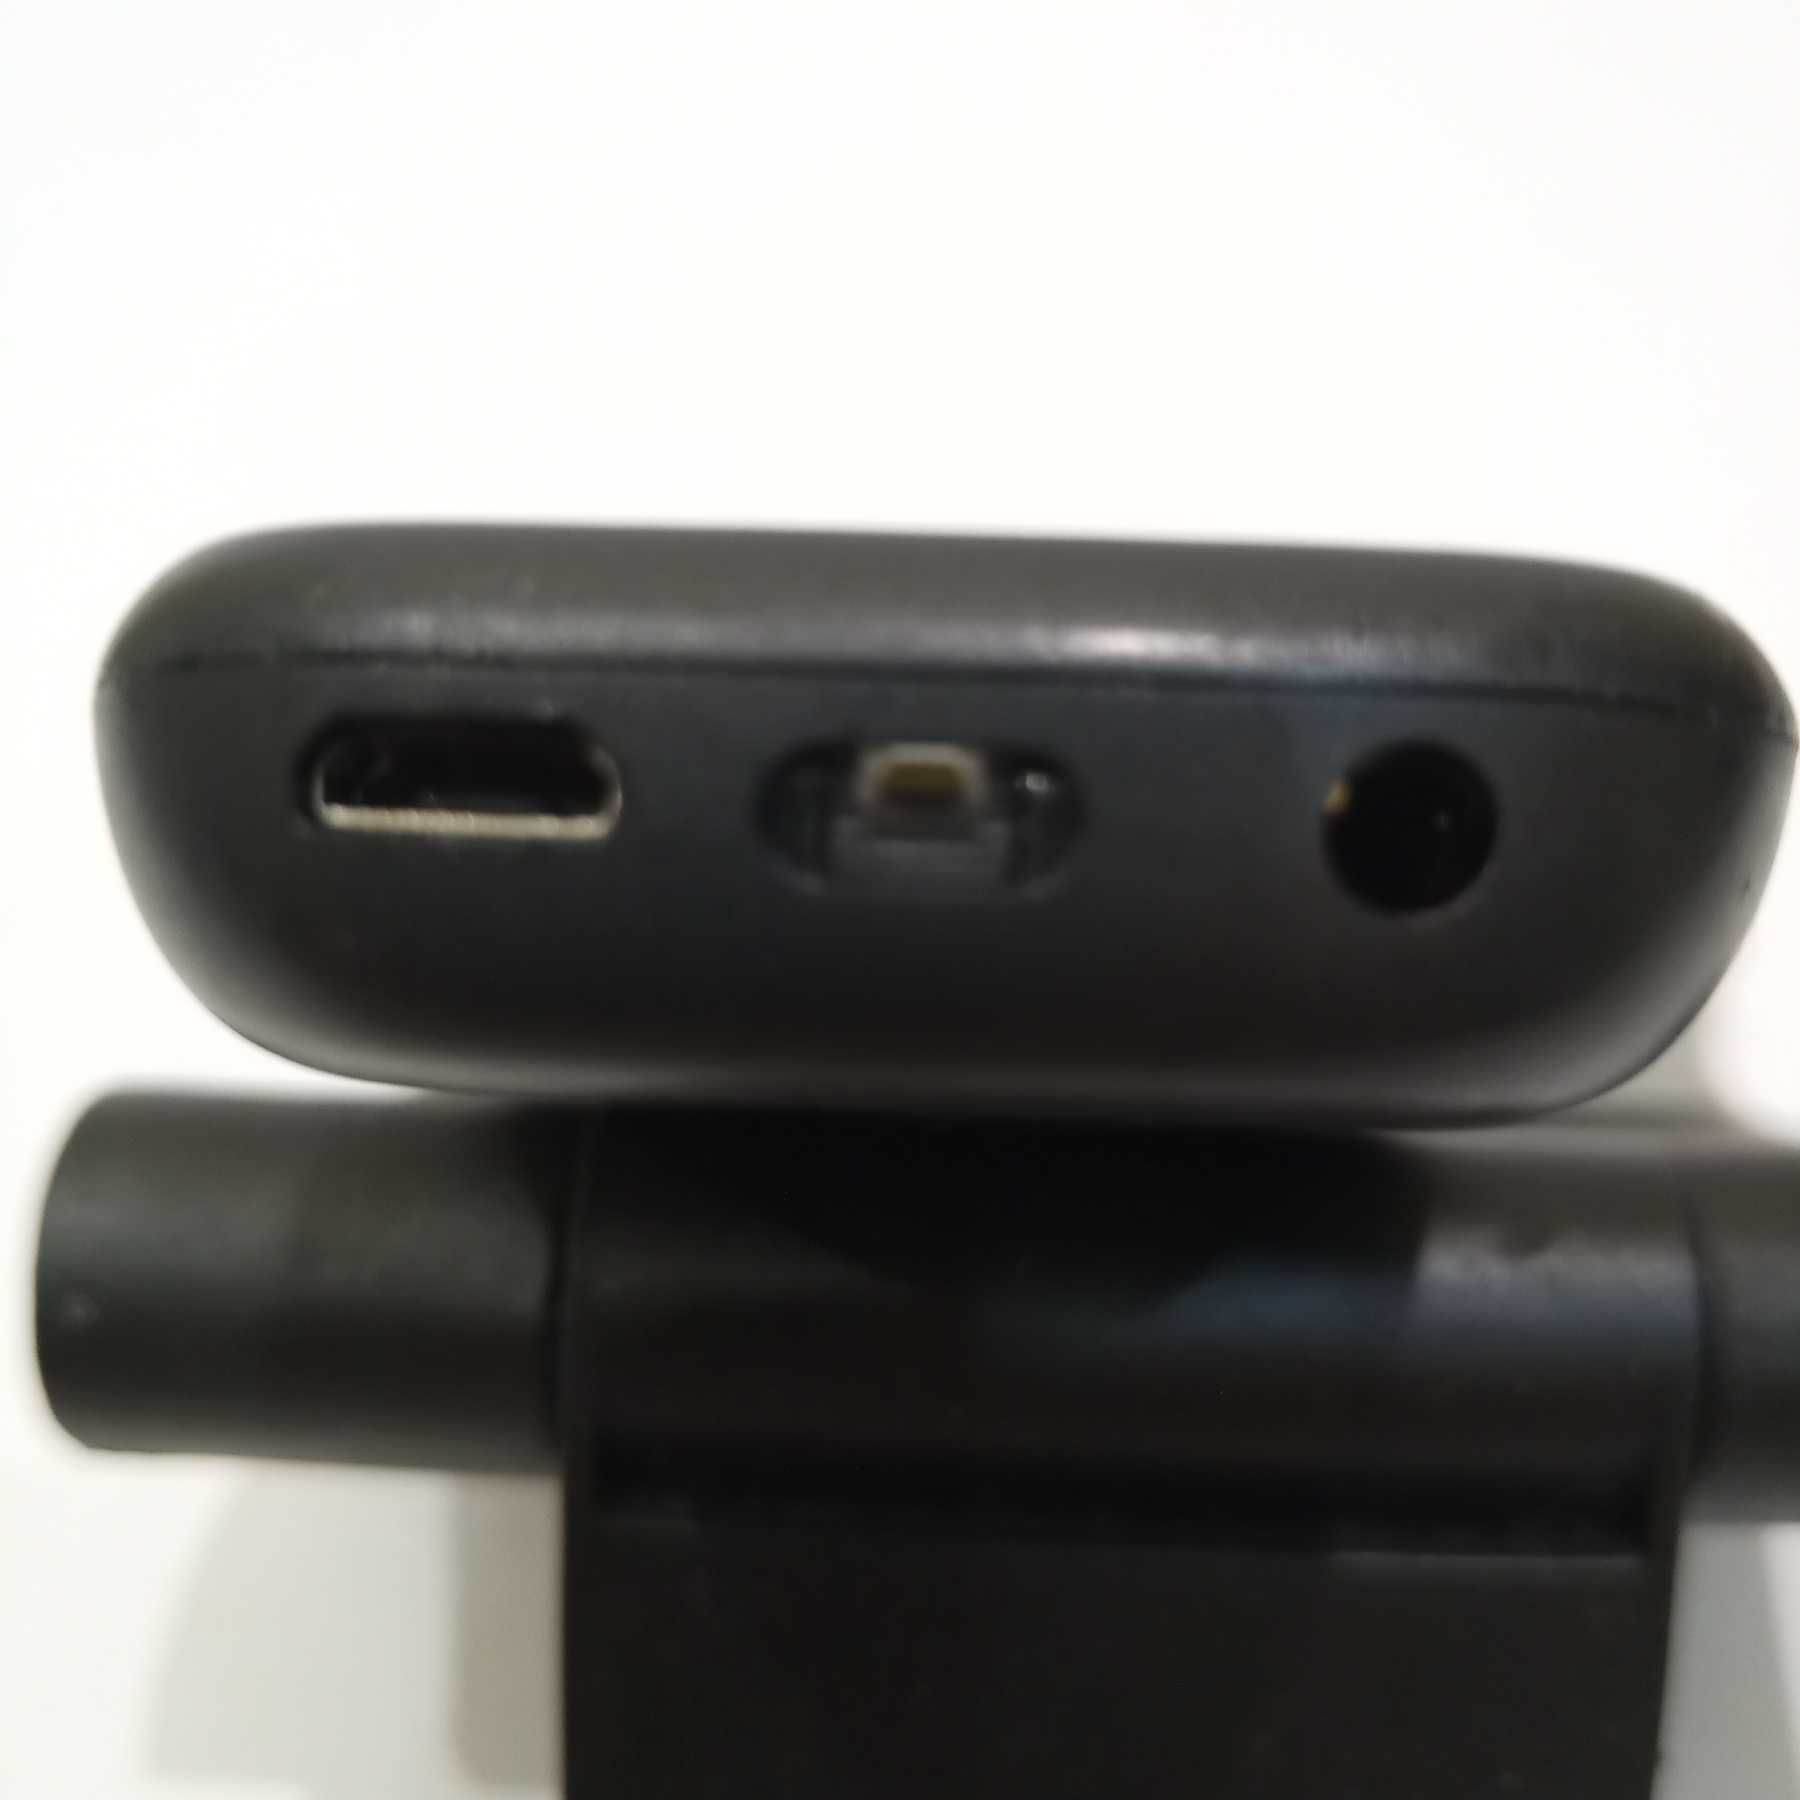 Мобильный телефон Nokia 105 Dual SIM (black) TA-1174 Вьетнам